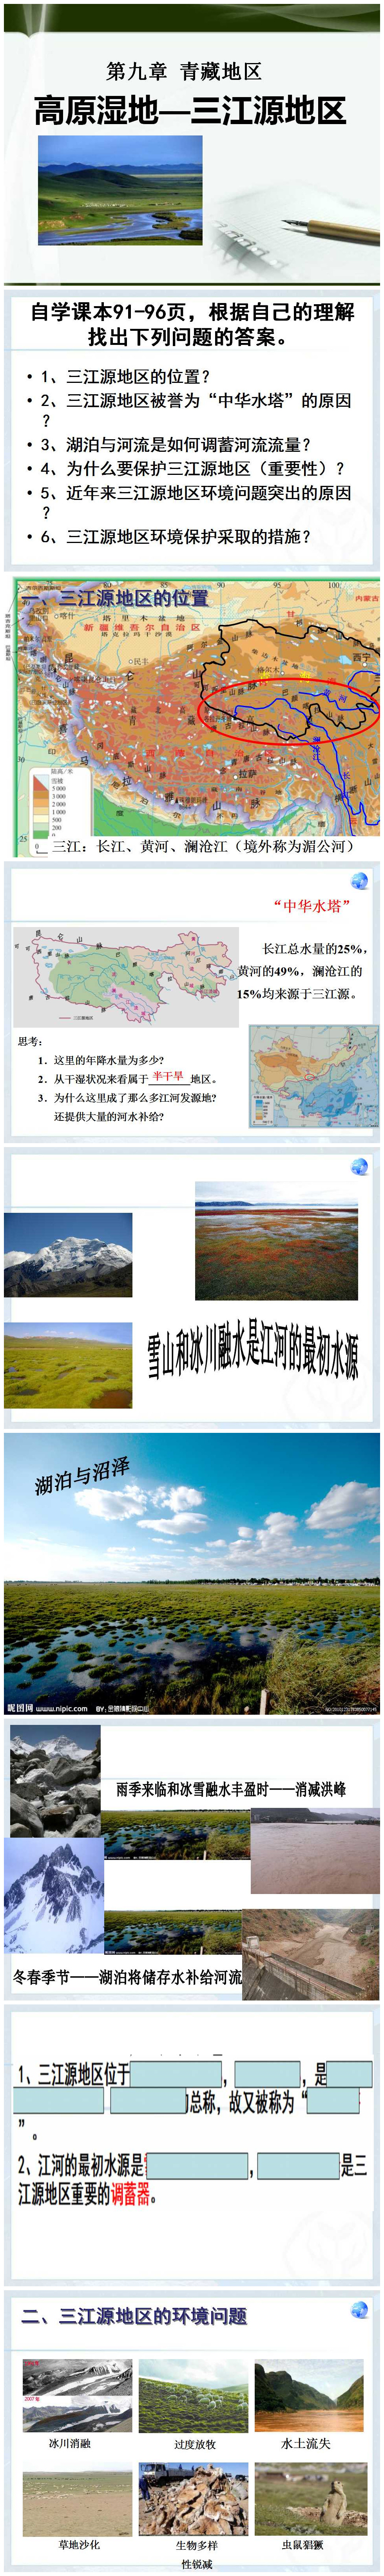 《高原湿地三江源地区》青藏地区PPT课件2PPT课件下载